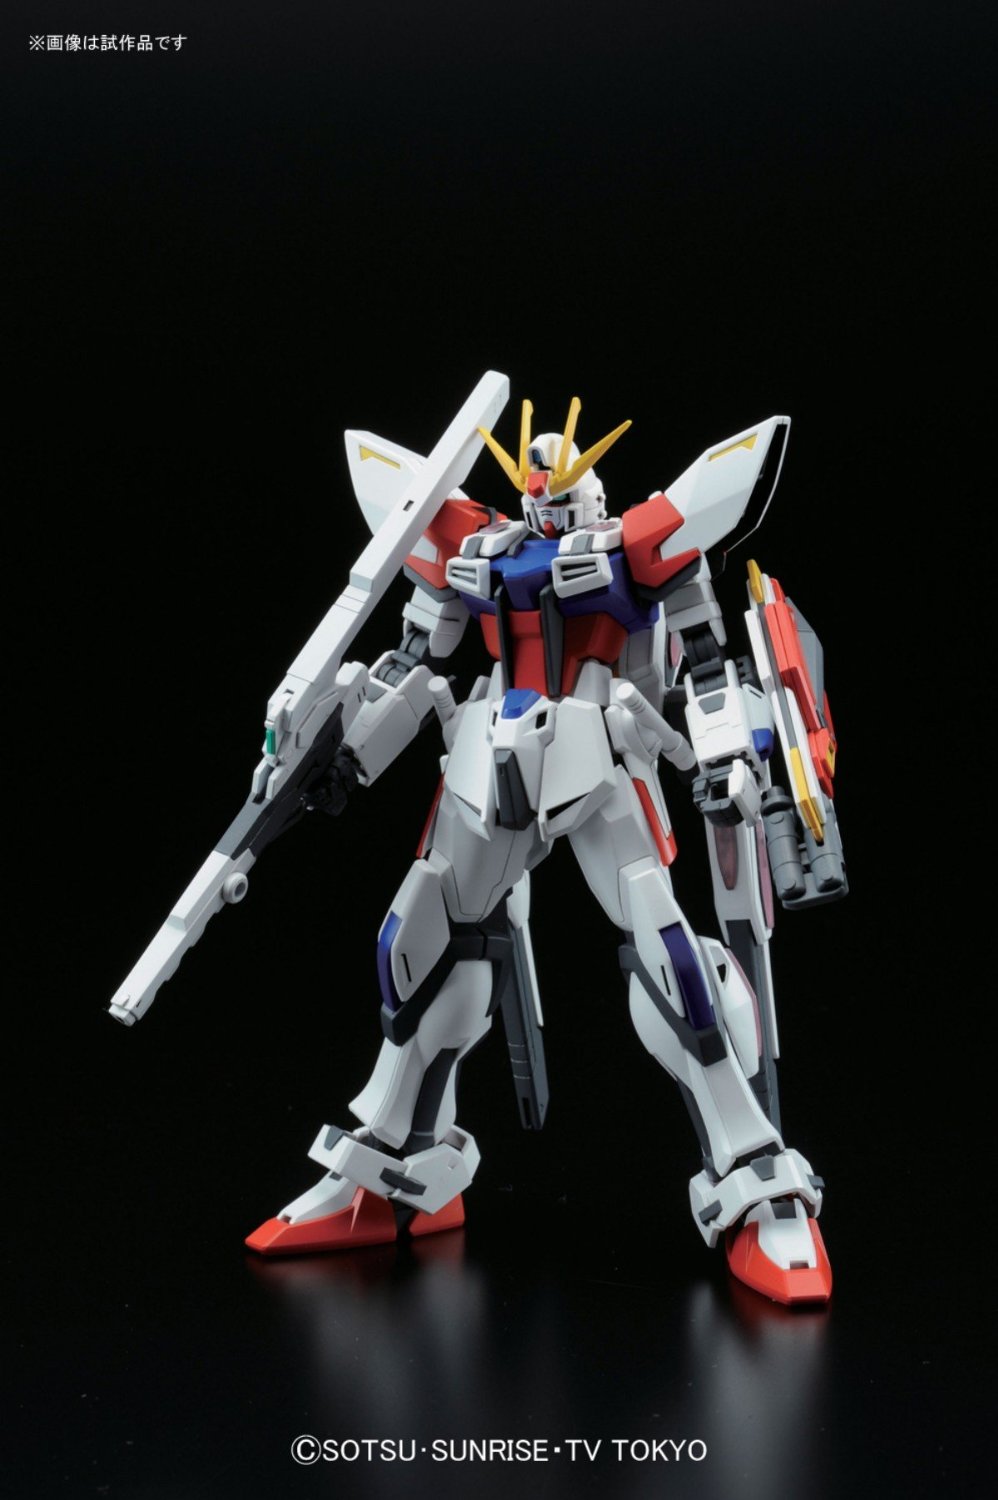 Hgbf 09 Star Build Strike Gundam Plavsky Wing Gundam Pros